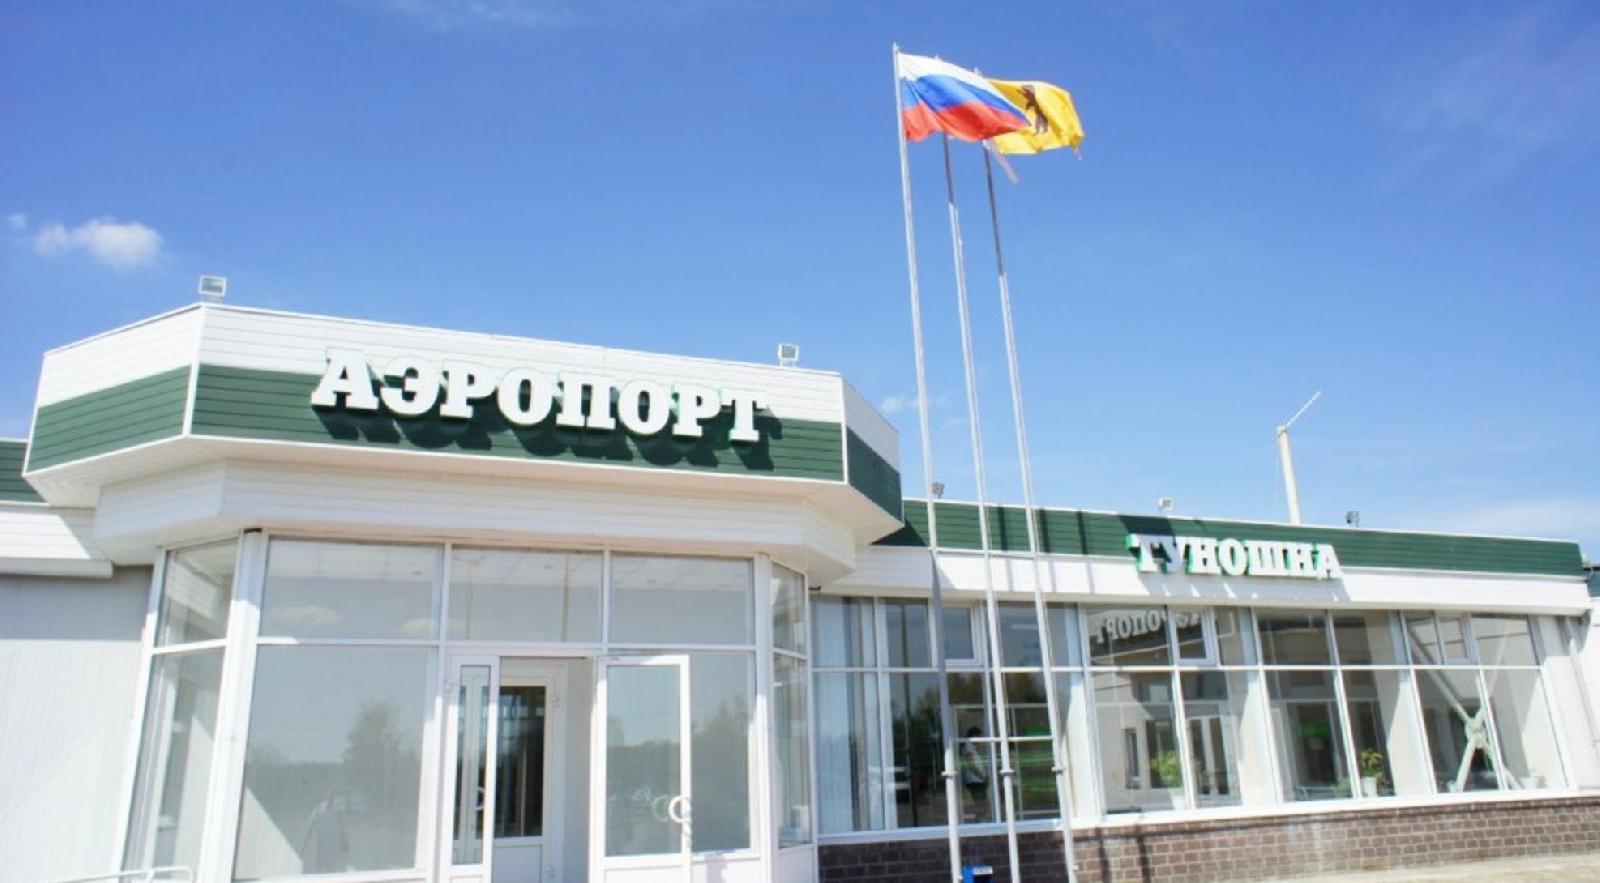 Сайт аэропорт туношна ярославль. Аэропорт Туношна Ярославль. Аэродром Туношна Ярославль. Аэропорт Туношна Ярославль фото.